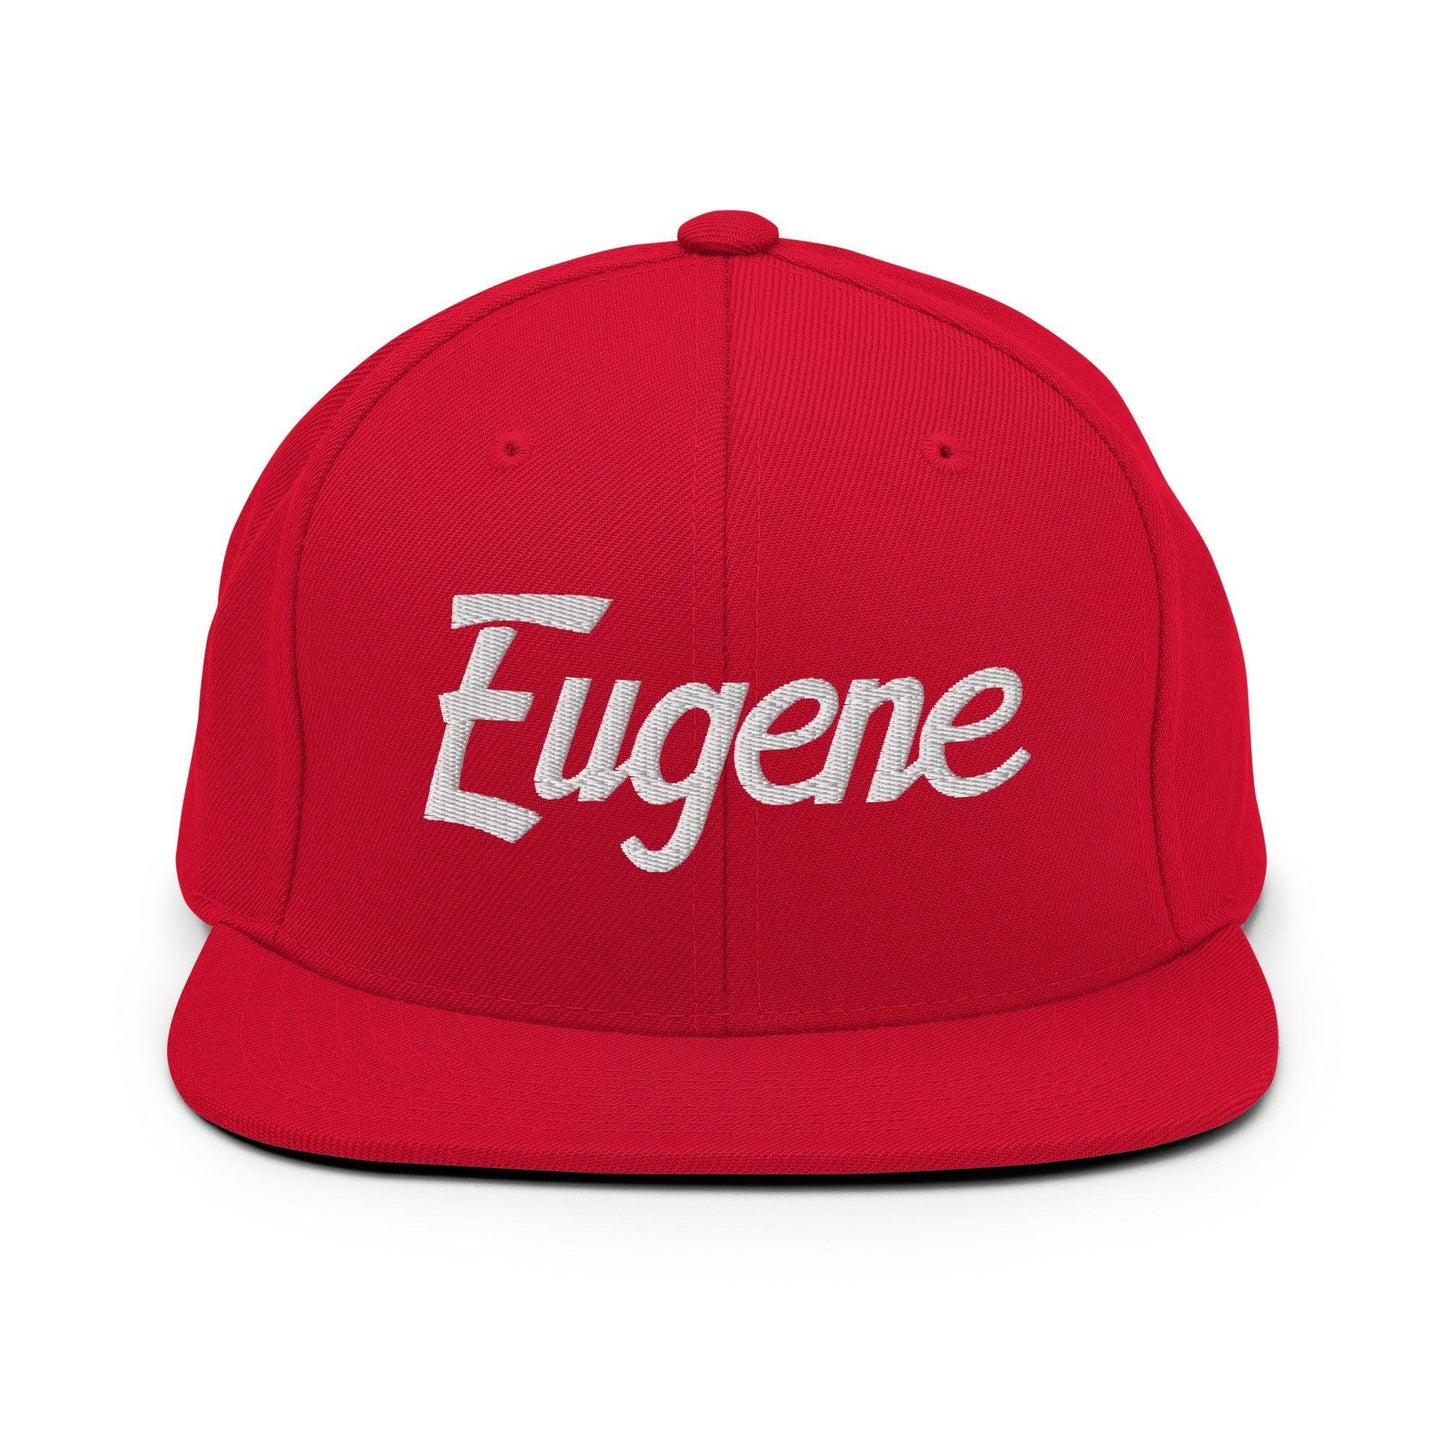 Eugene Script Snapback Hat Red